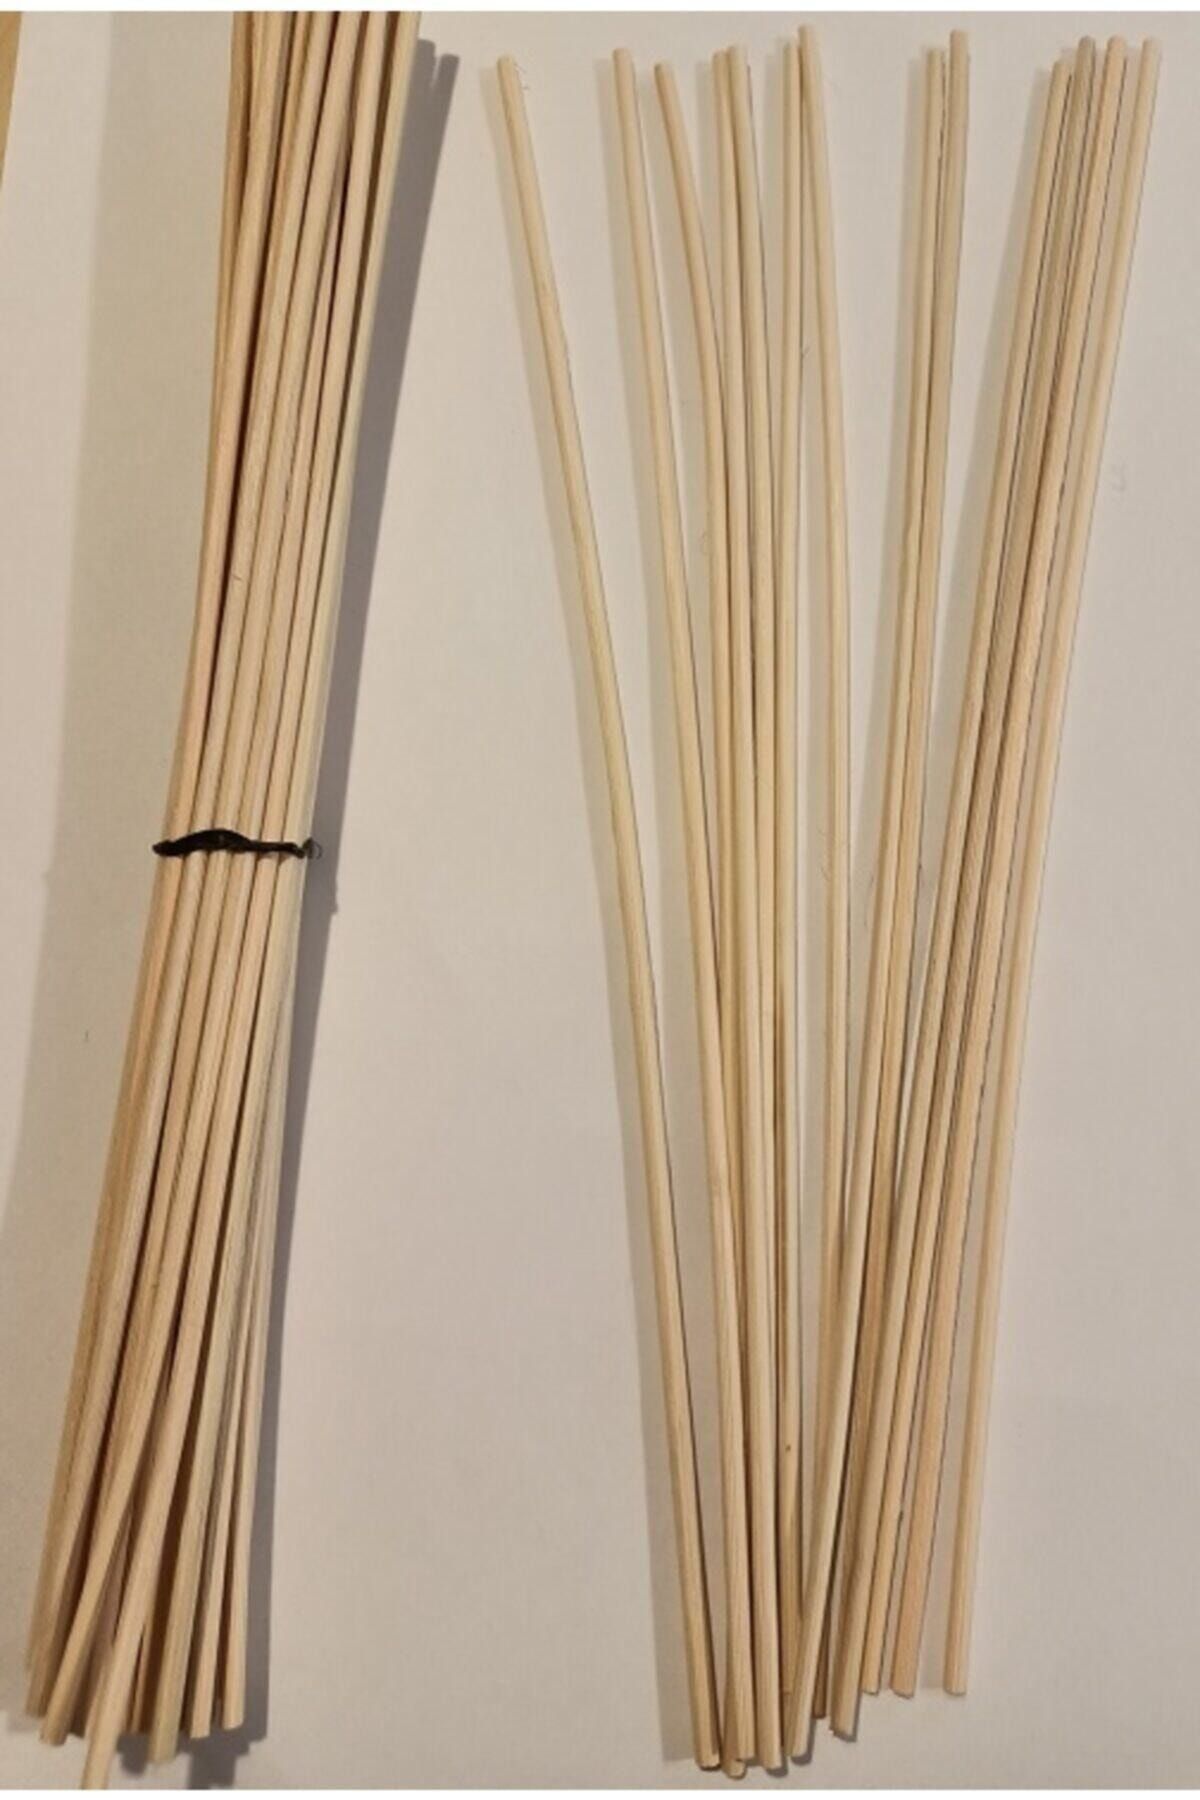 Yeni Hediyelik Dünyam Bambu Rattan Koku Çubuğu 20 Cm Uzunluk 30 Adet